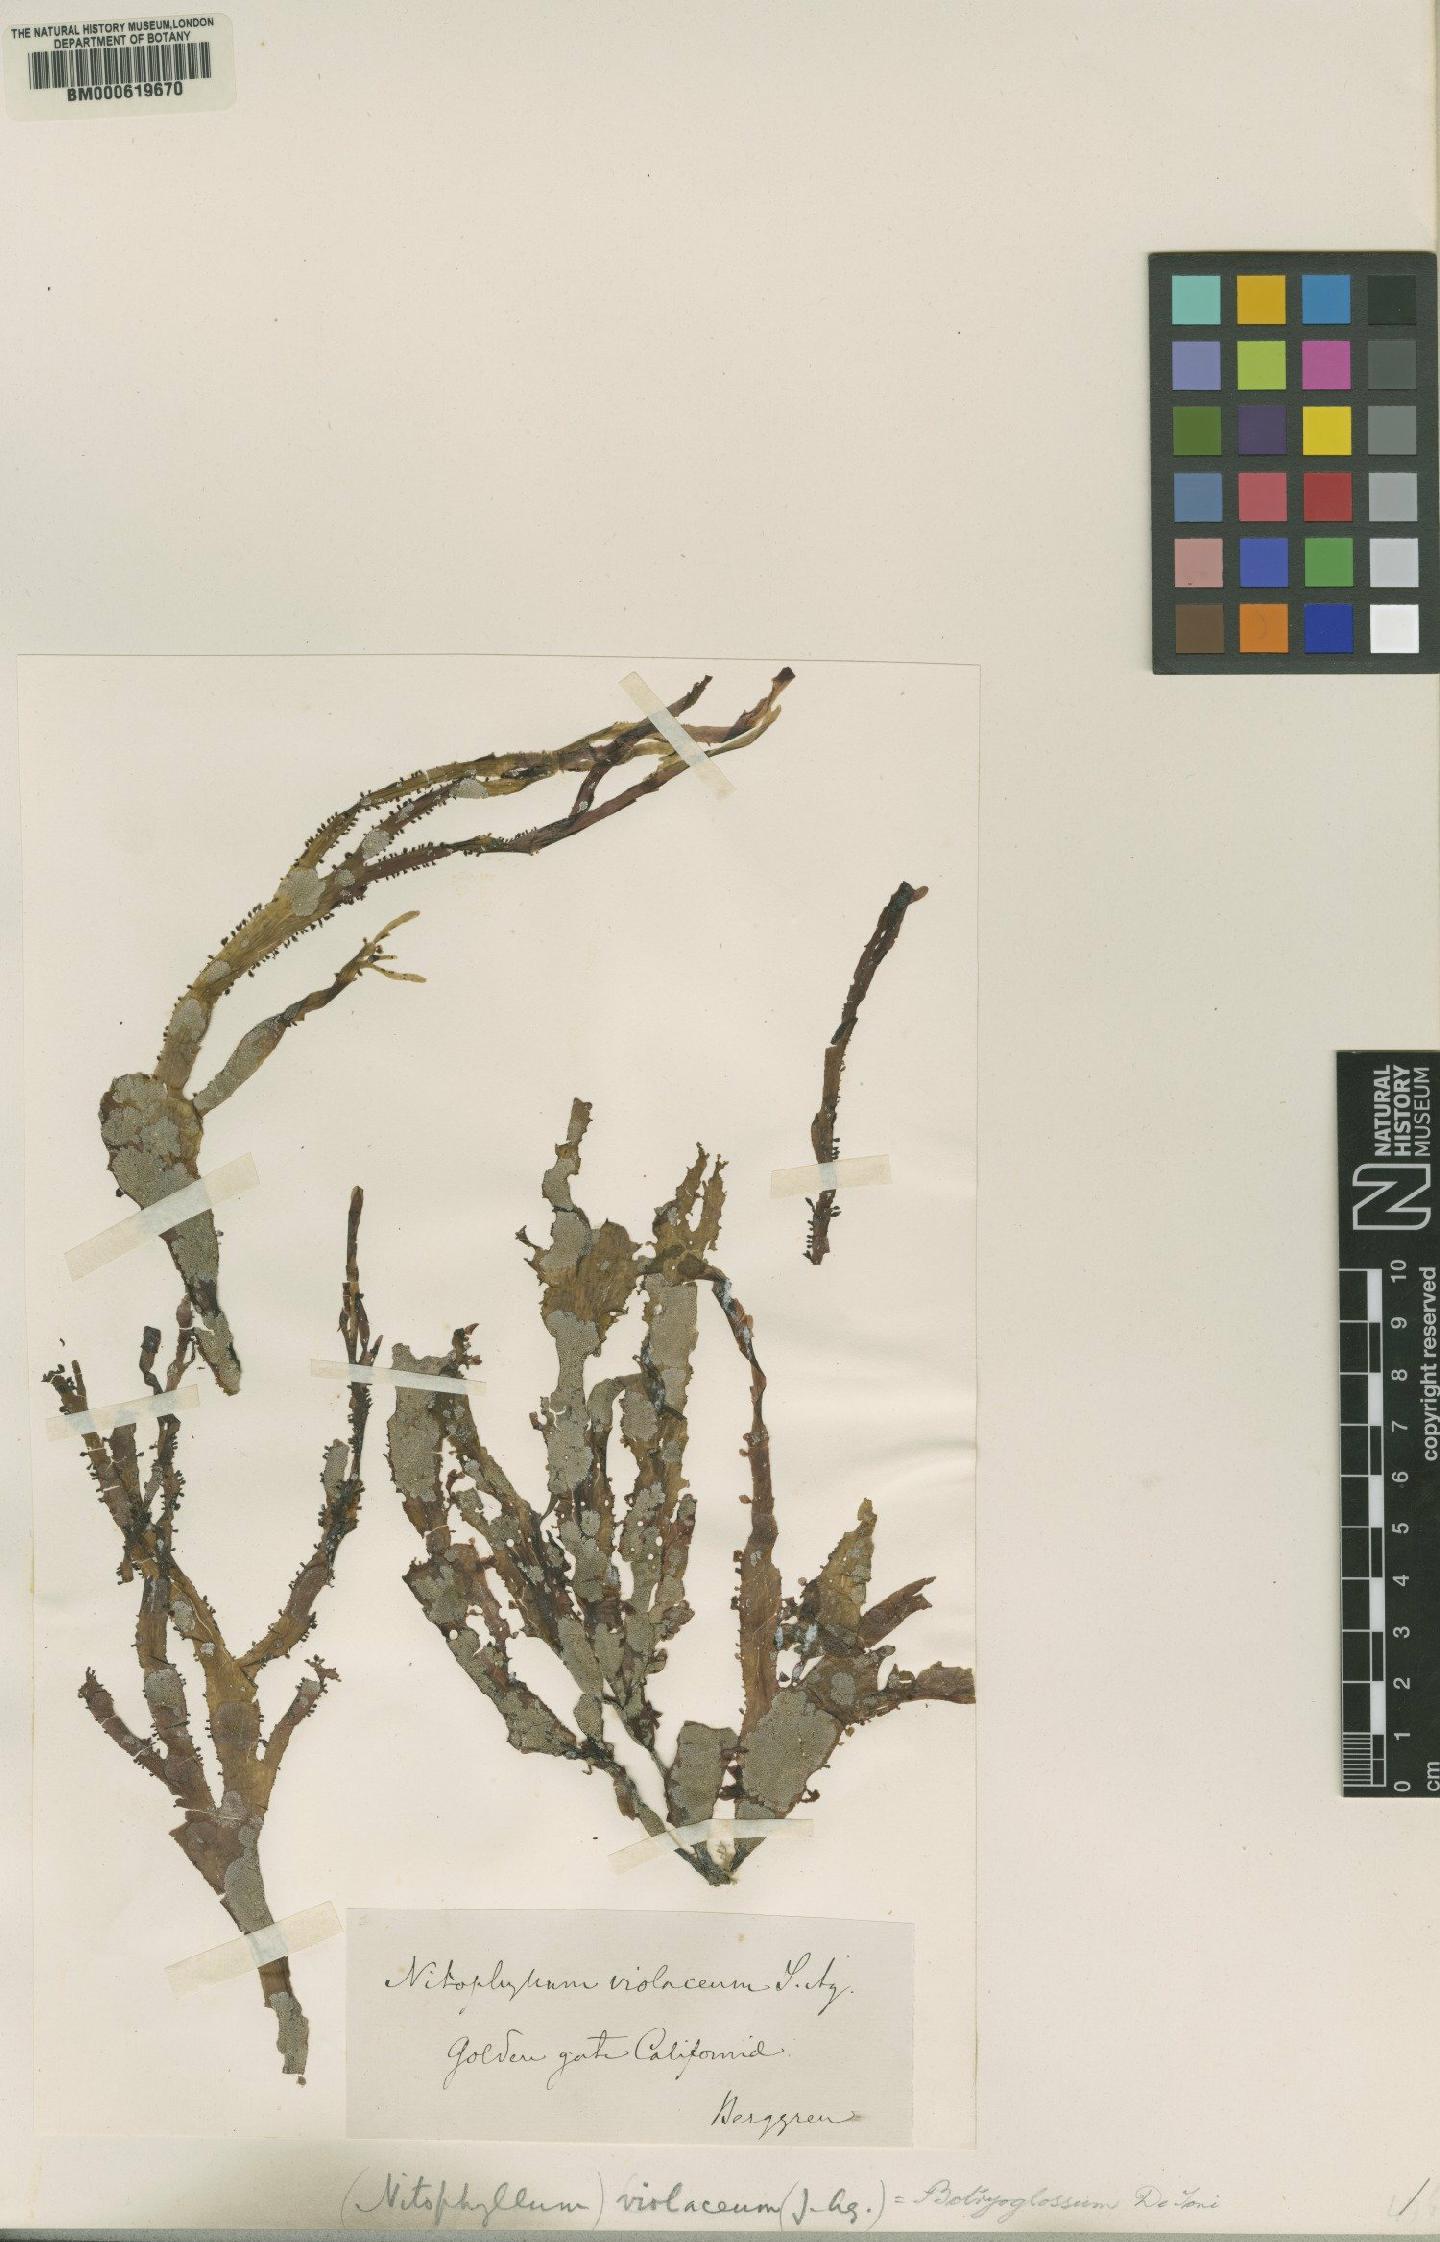 To NHMUK collection (Cryptopleura violacea (Agardh) Kylin; Type; NHMUK:ecatalogue:4791709)